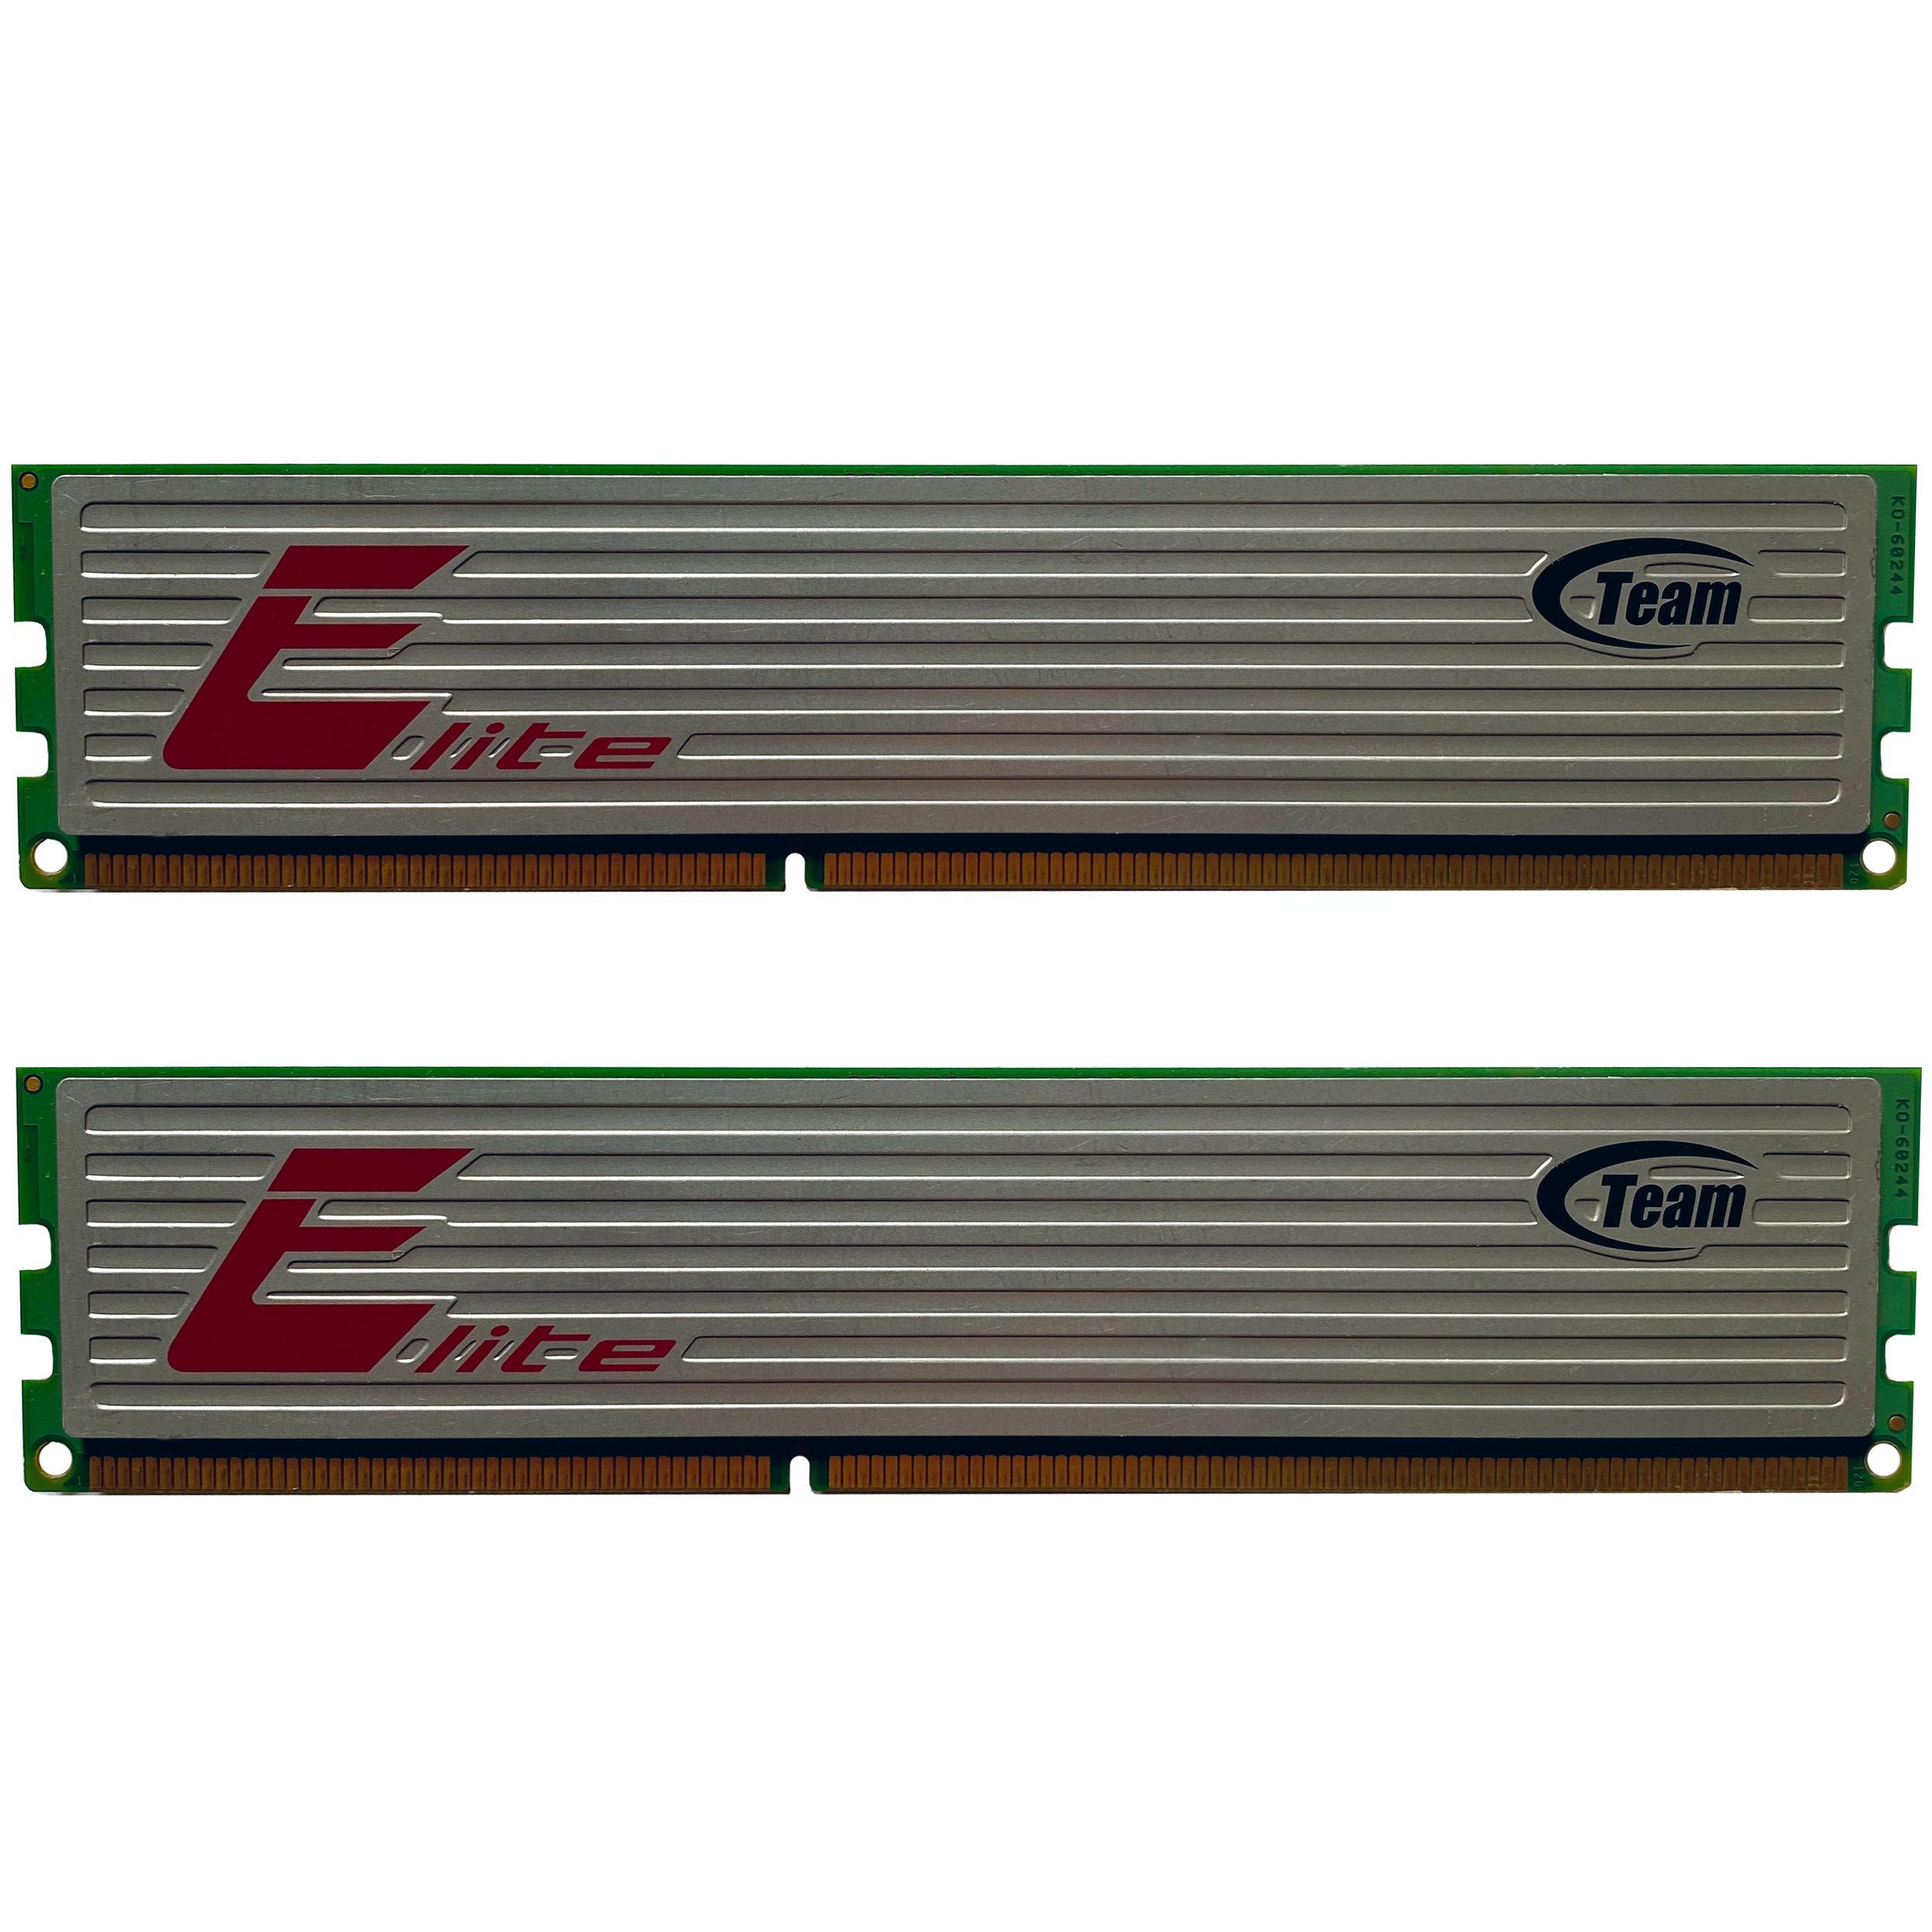 رم دسکتاپ DDR3 دو کاناله 1333 مگاهرتز CL9 تیم گروپ مدل Elite ظرفیت 4 گیگابایت